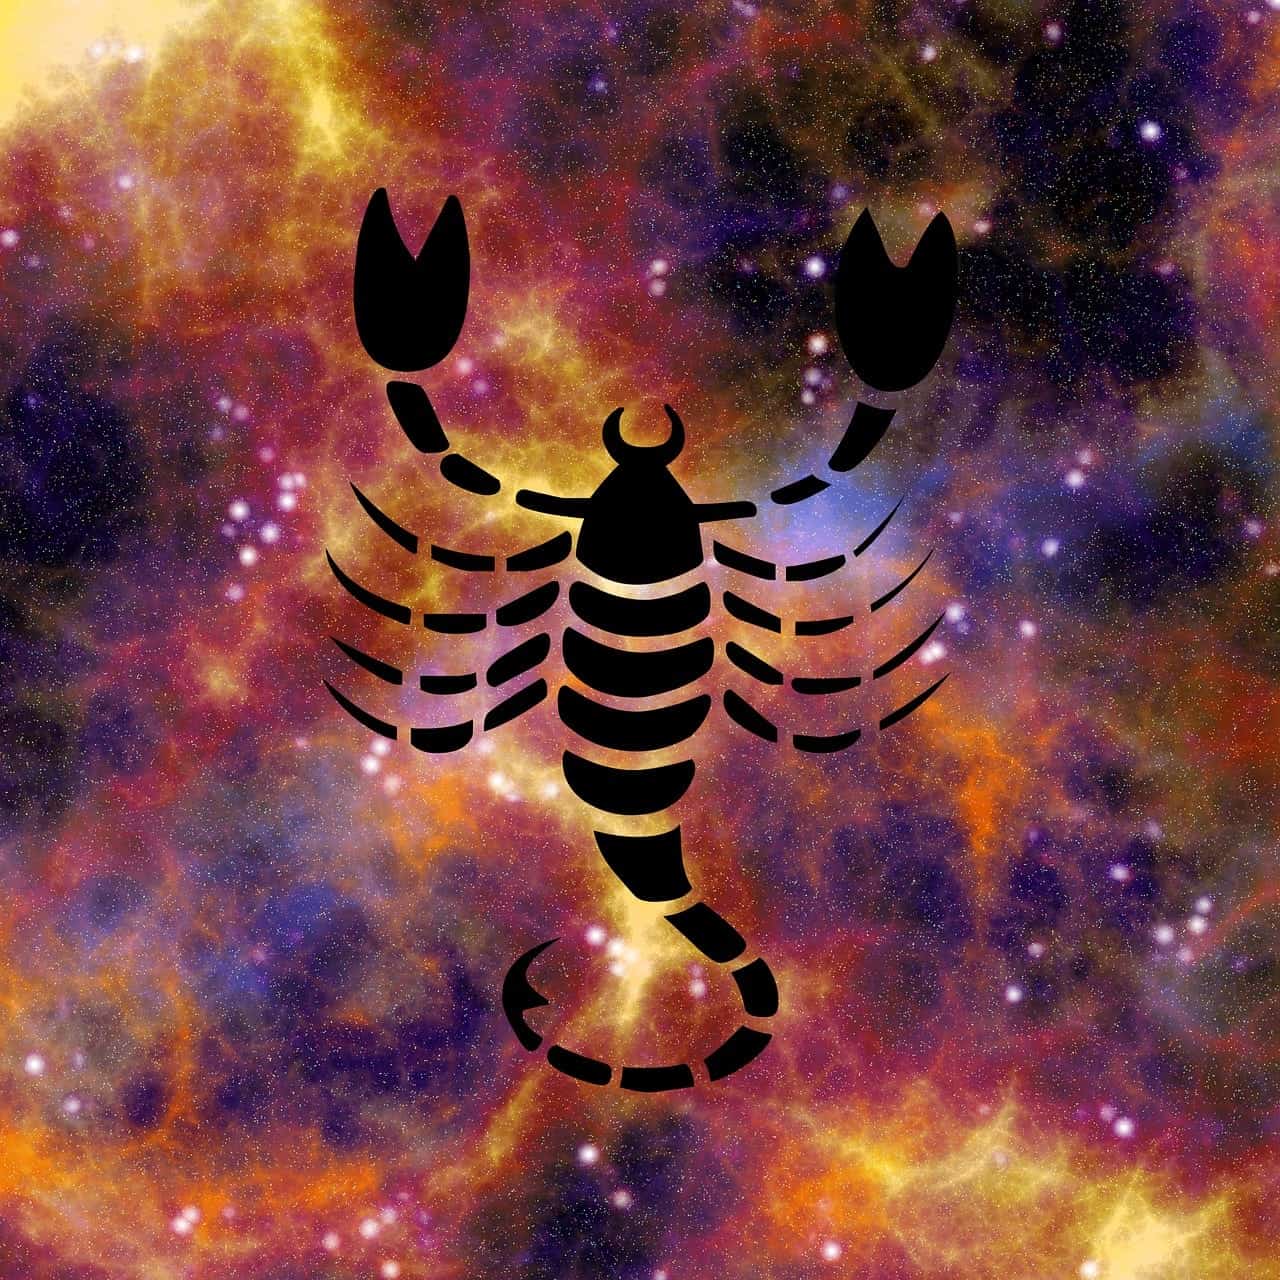 escorpion horóscopo de la semana, del 13 al 19 de mayo 2019, ¡grandes propuest ID187657 - hermandadblanca.org